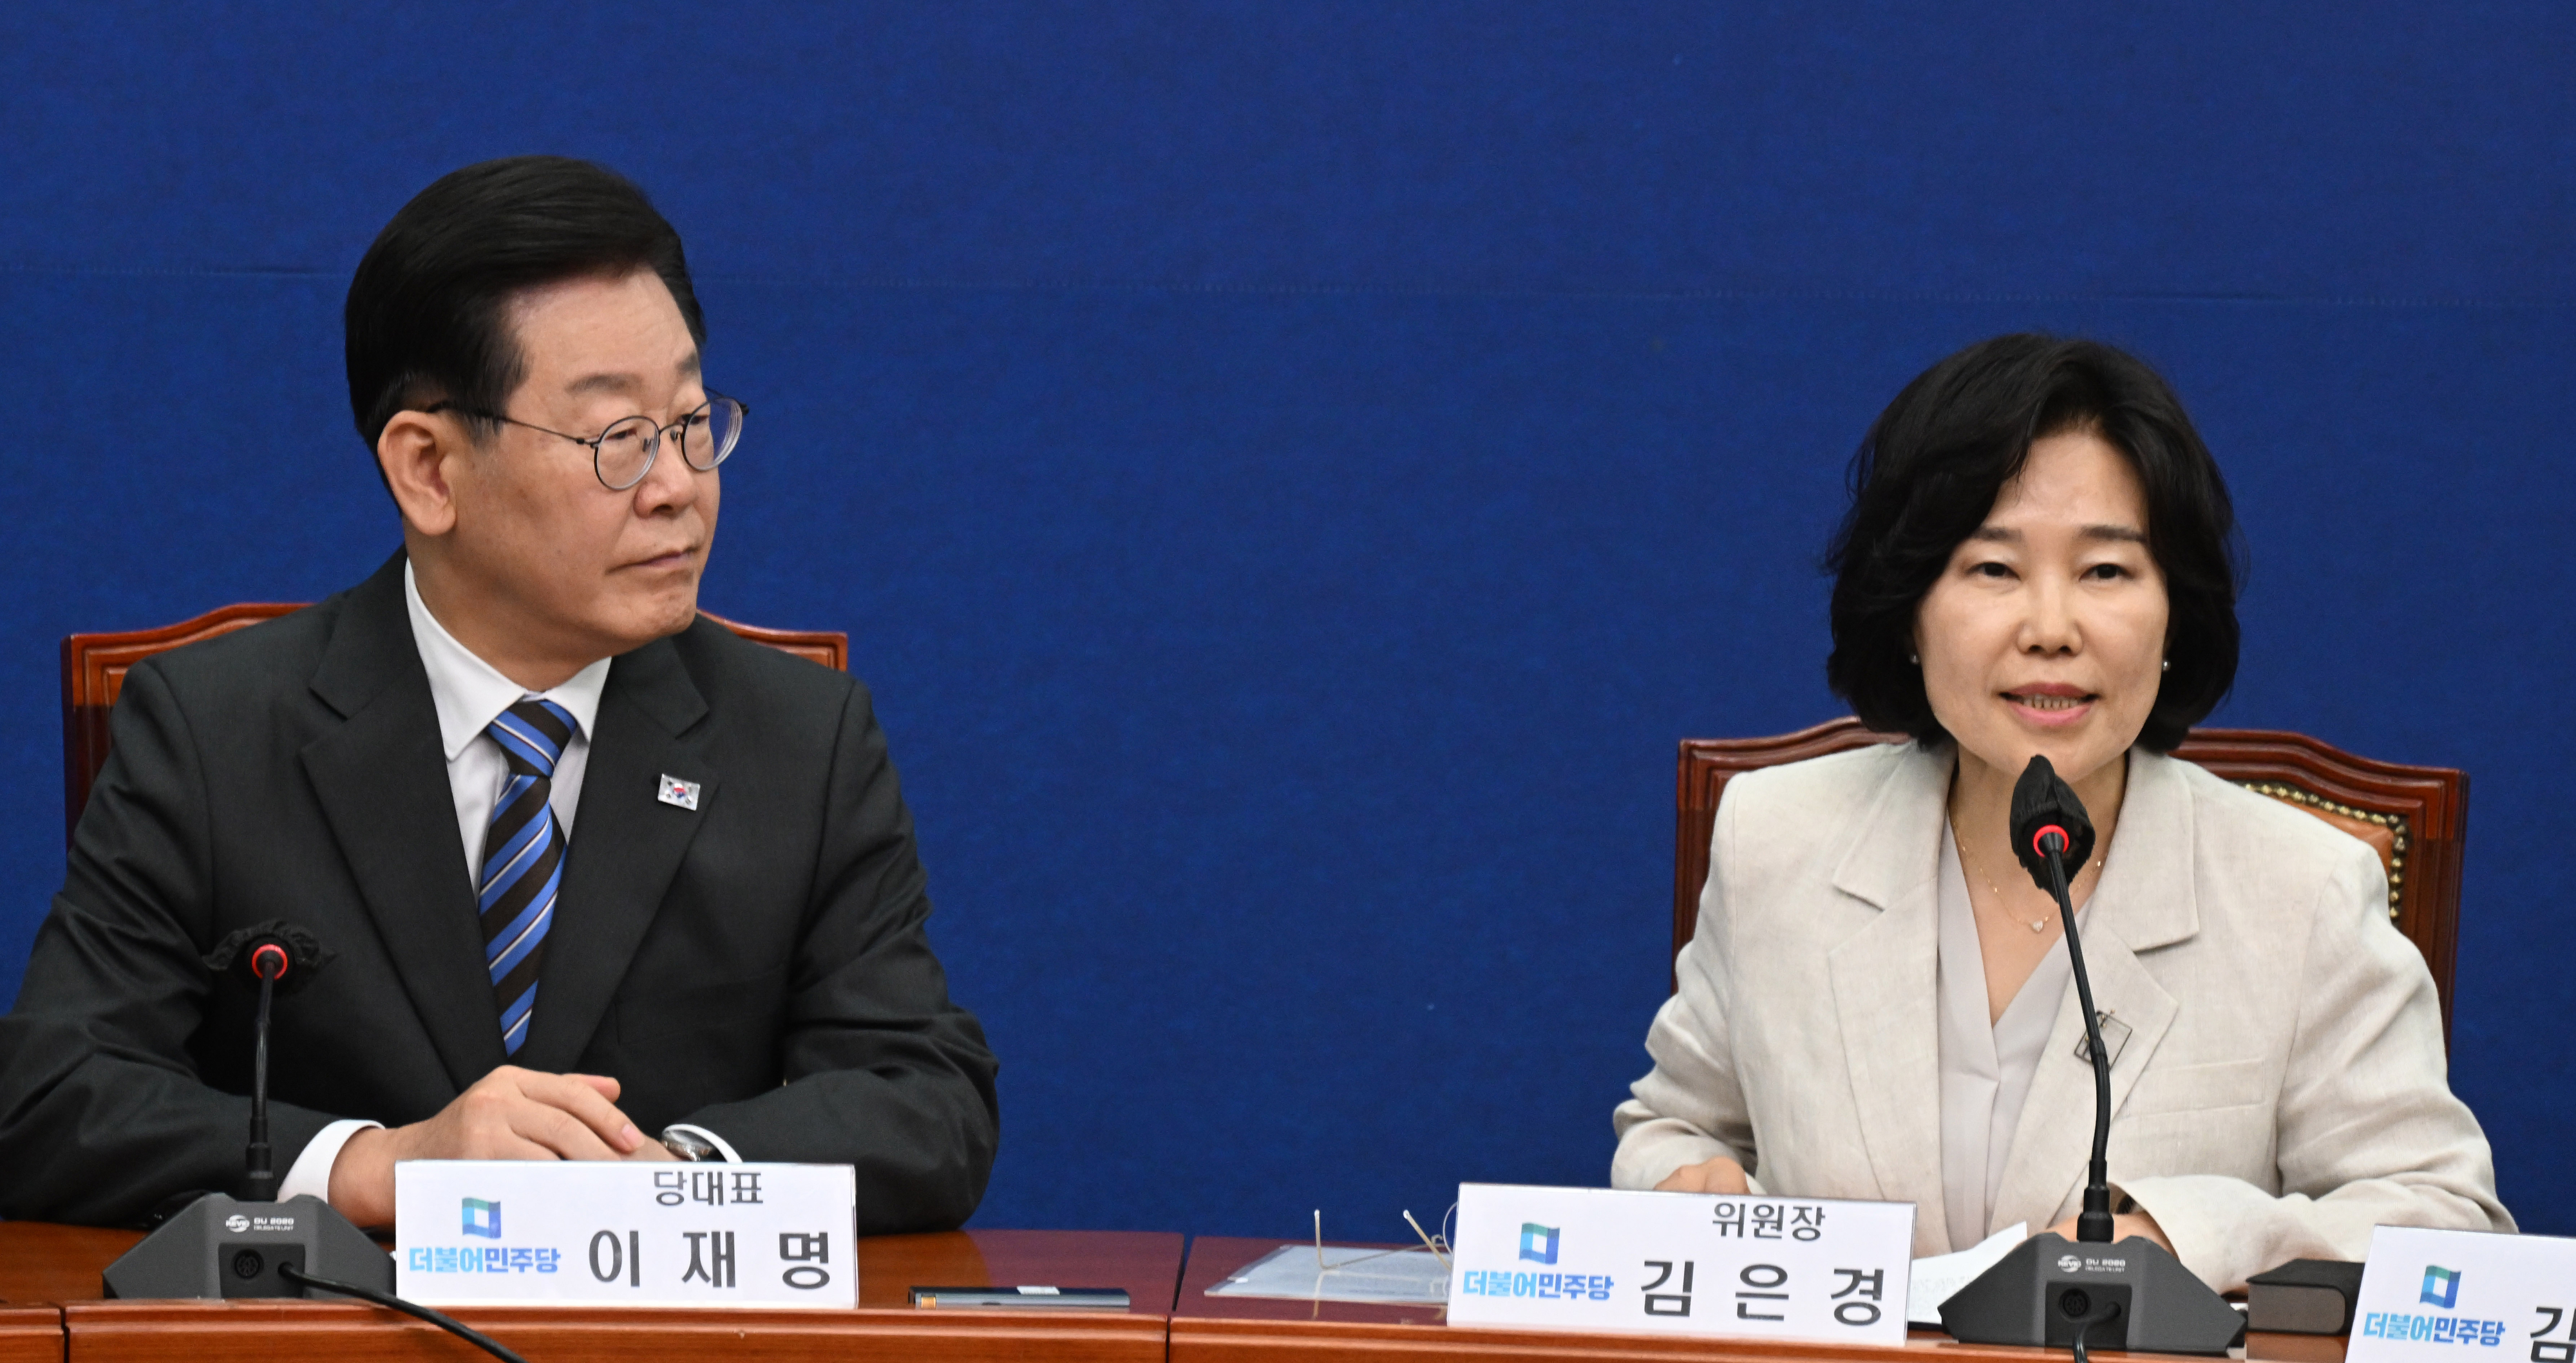 국회에서 20일 열린 더불어민주당 혁신기구 1차 회의에서 김은경(오른쪽) 혁신위원장이 이재명 대표가 지켜보는 가운데 발언하고 있다. 안주영 전문기자